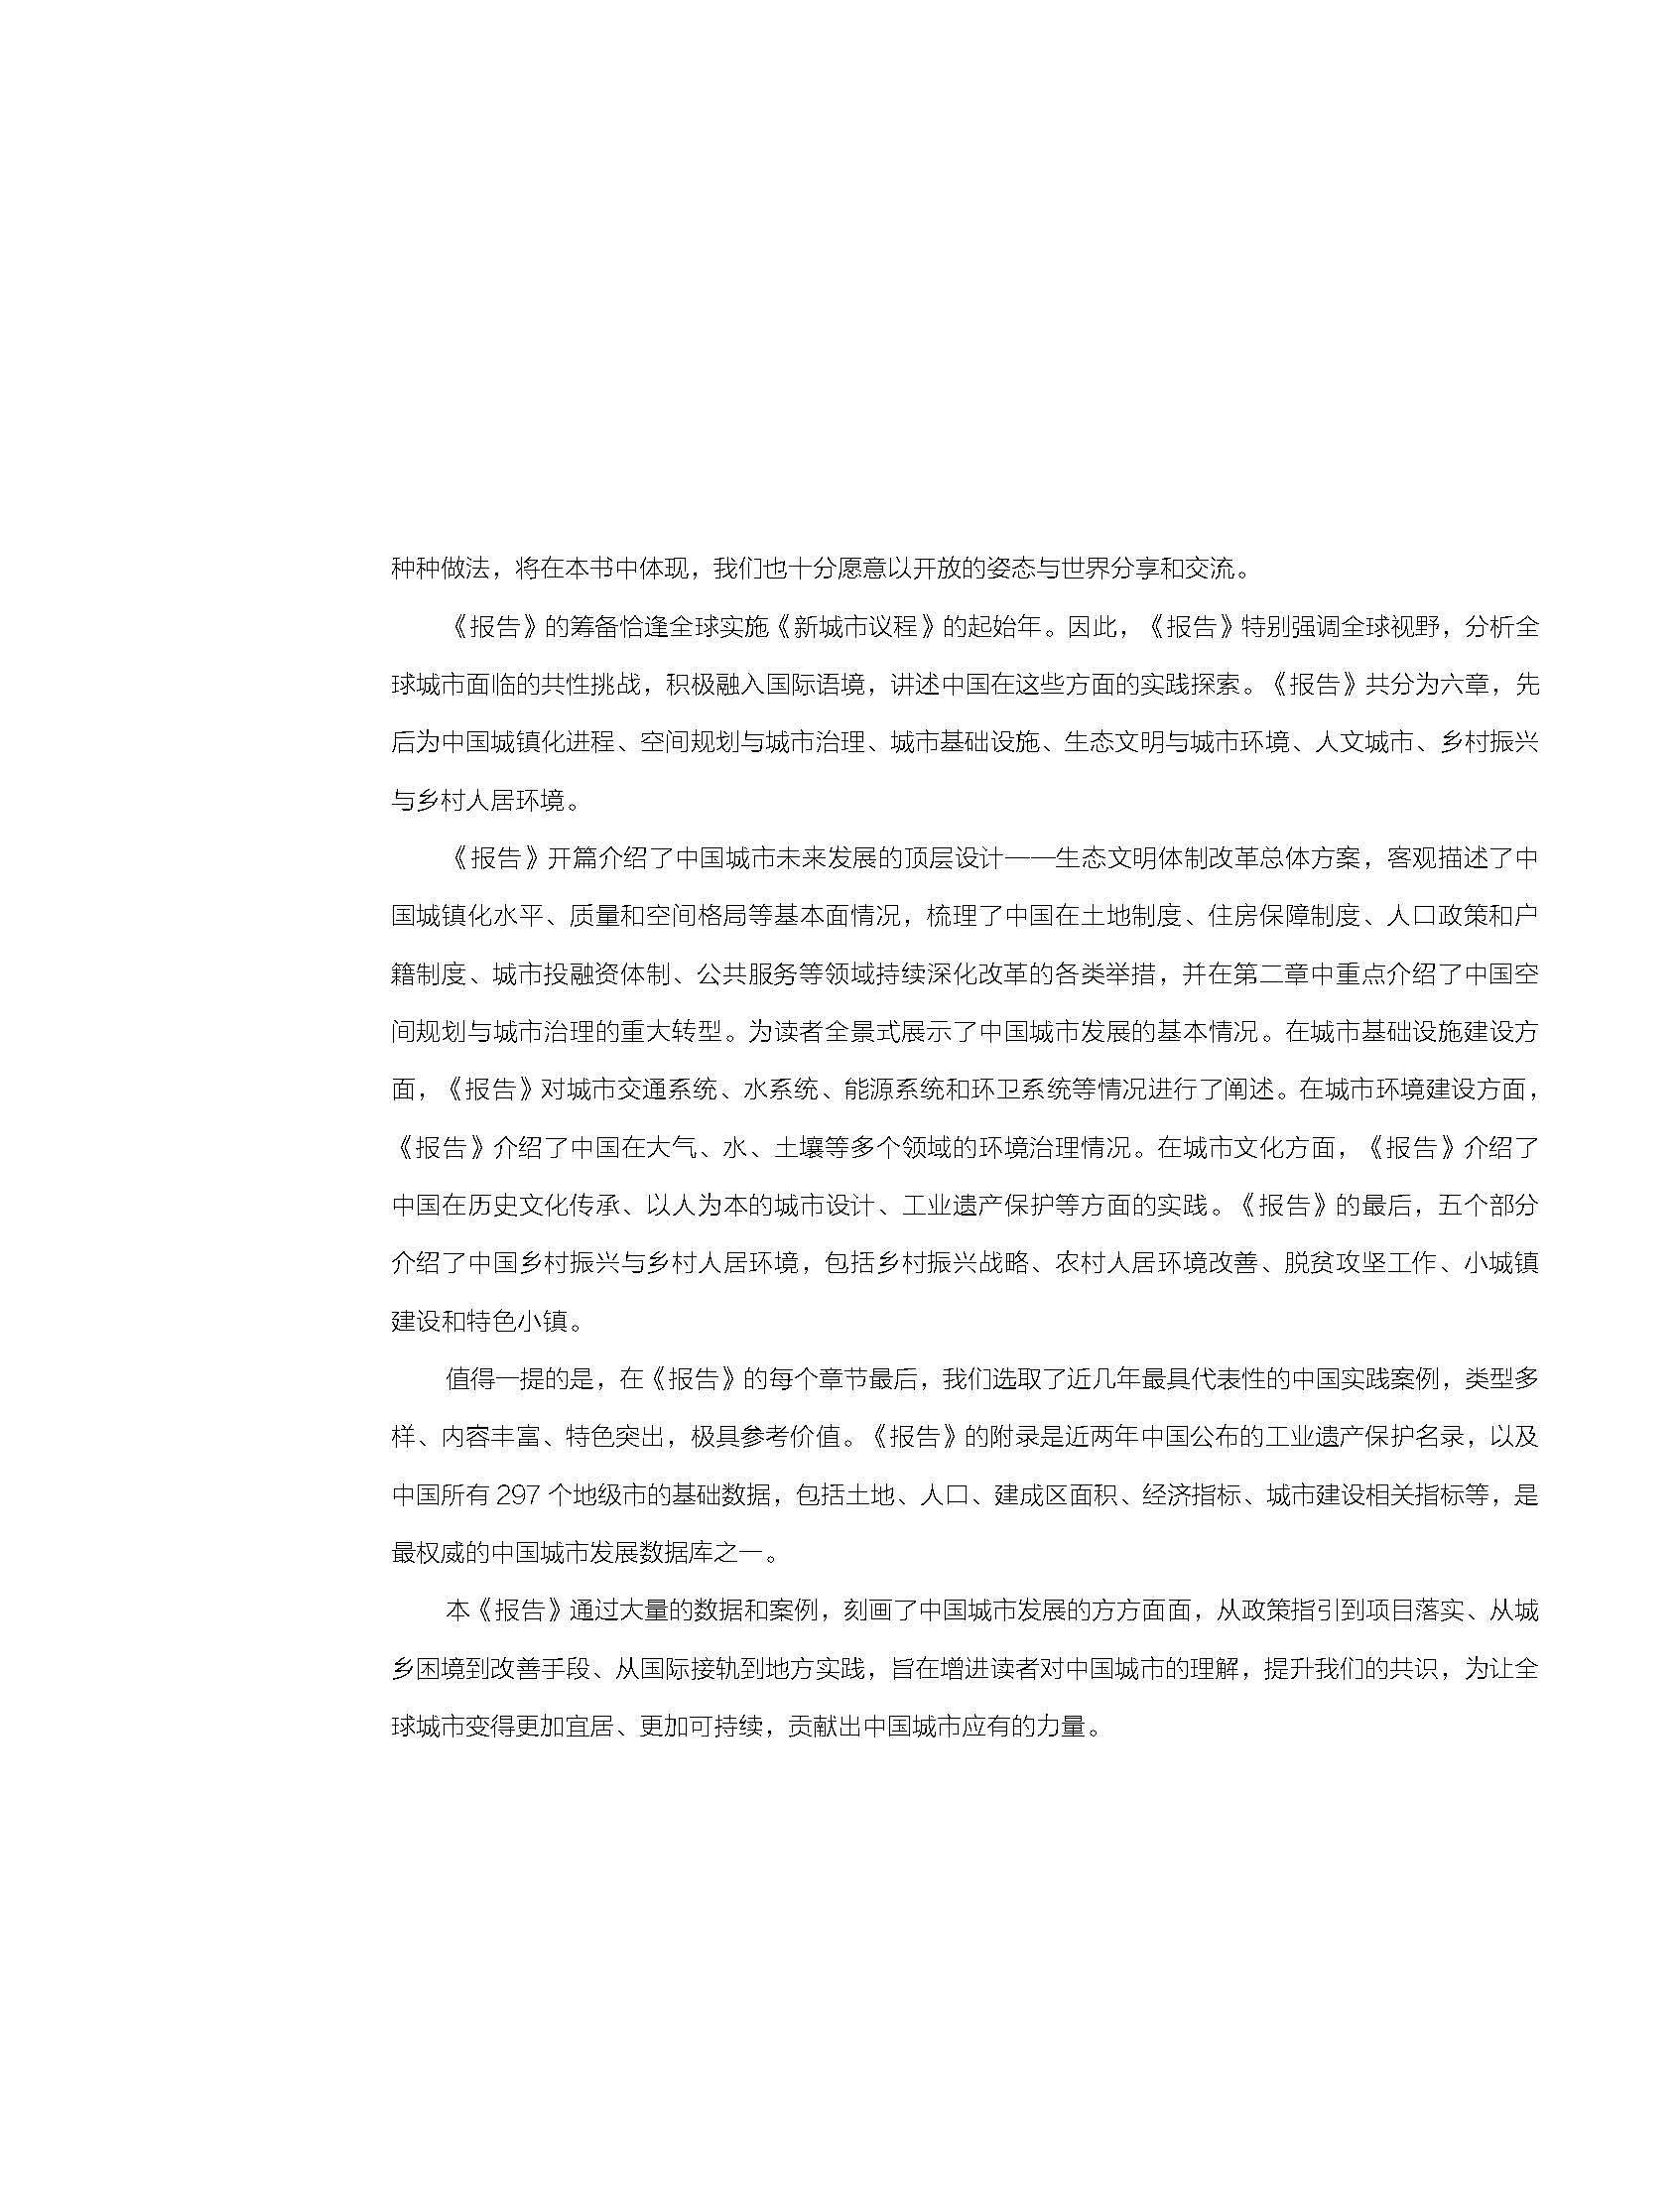 状况报告2018-2019中文 9.jpg